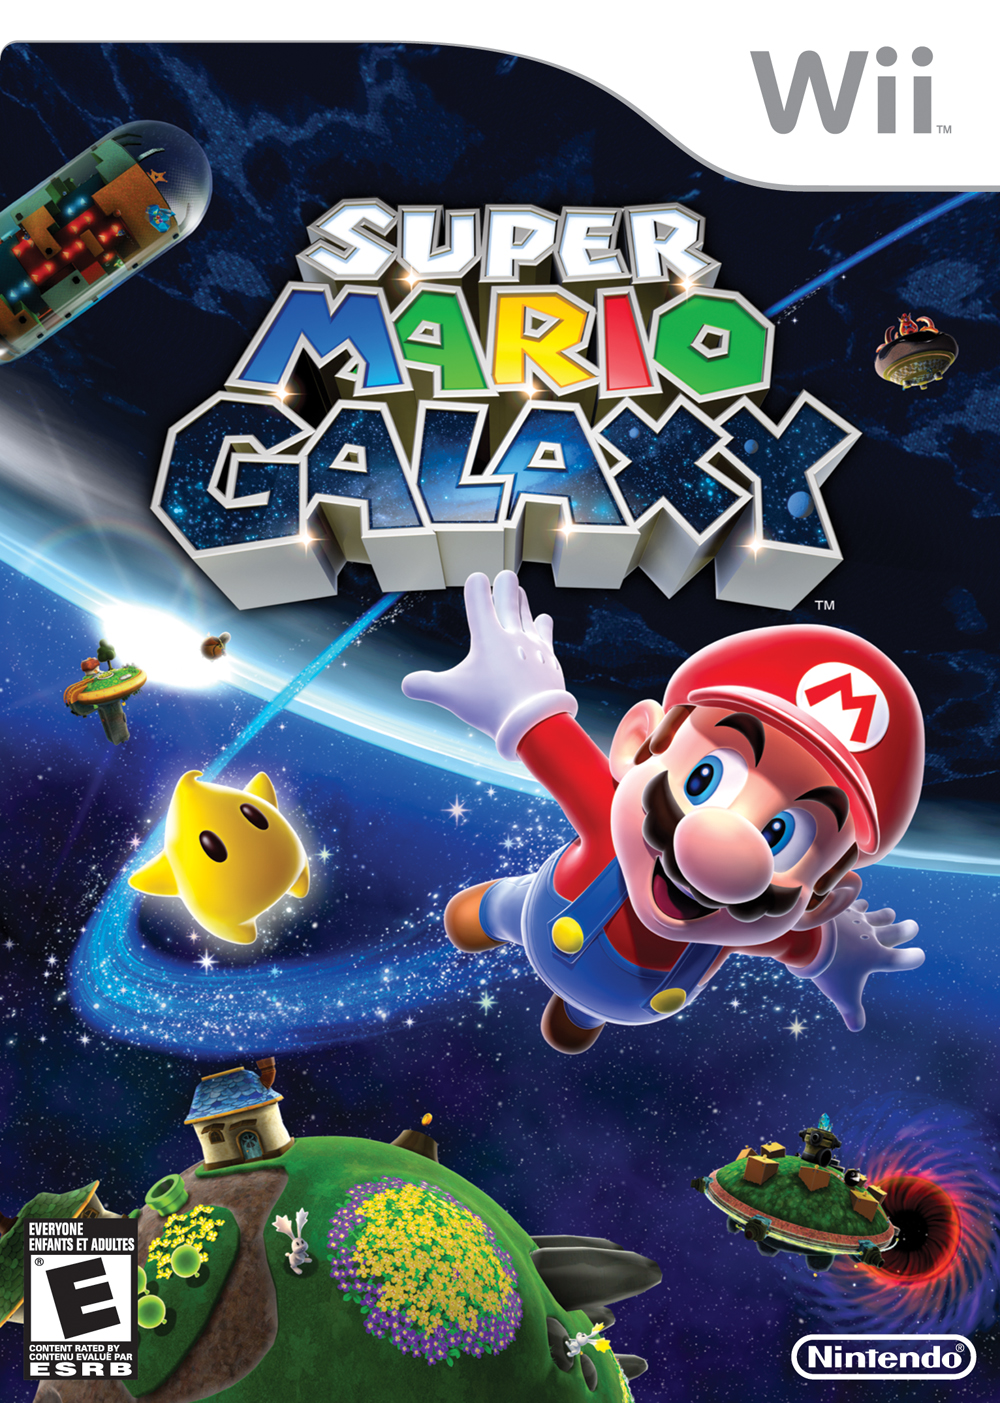 Super Mario Galaxy | Nintendo | Fandom